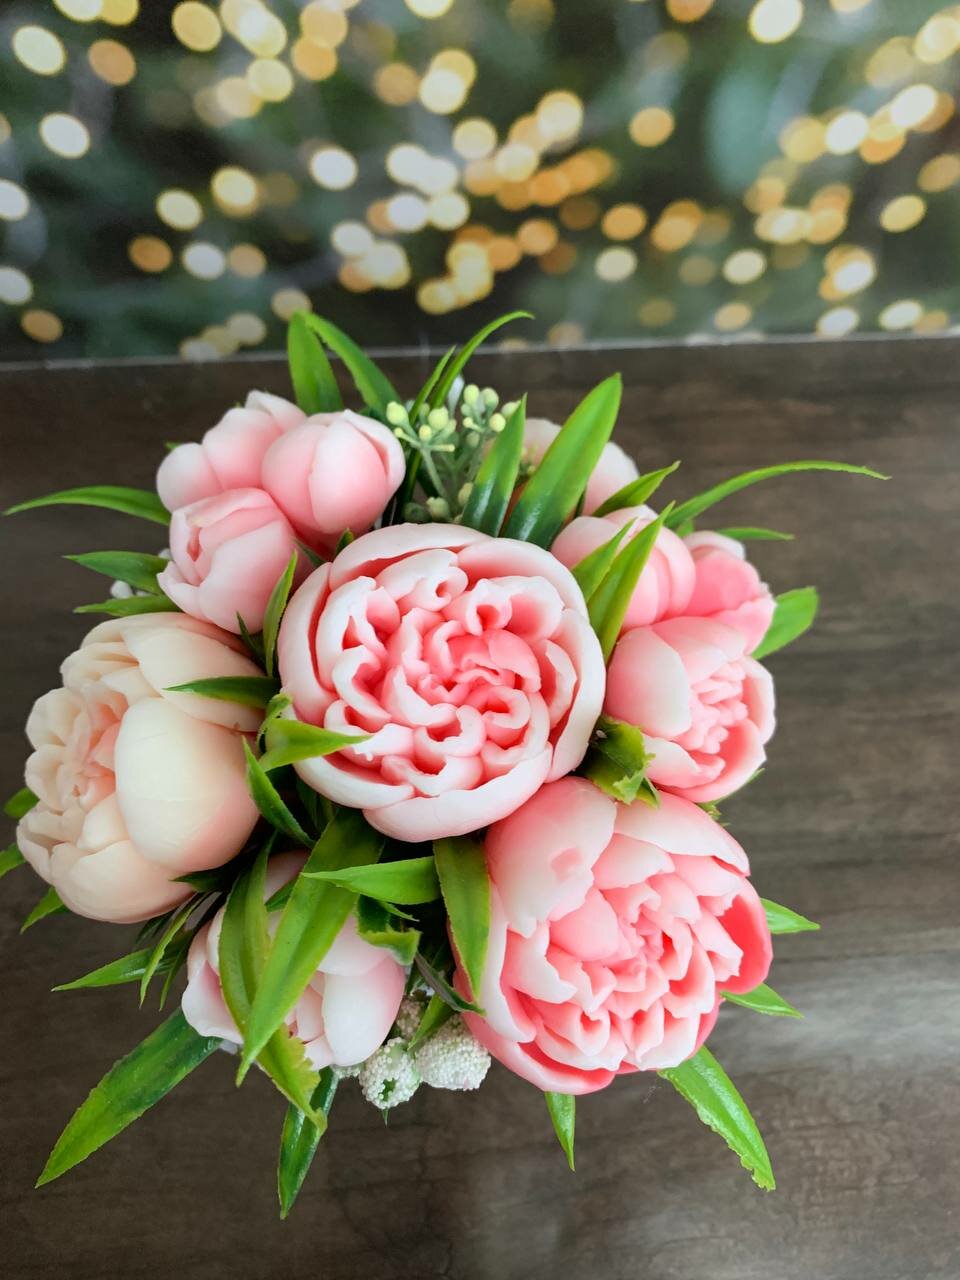 "Букет розовых Пионов" - 11 шикарных цветов для незабываемого подарка| Мыло ручной работы| Foxy_foap